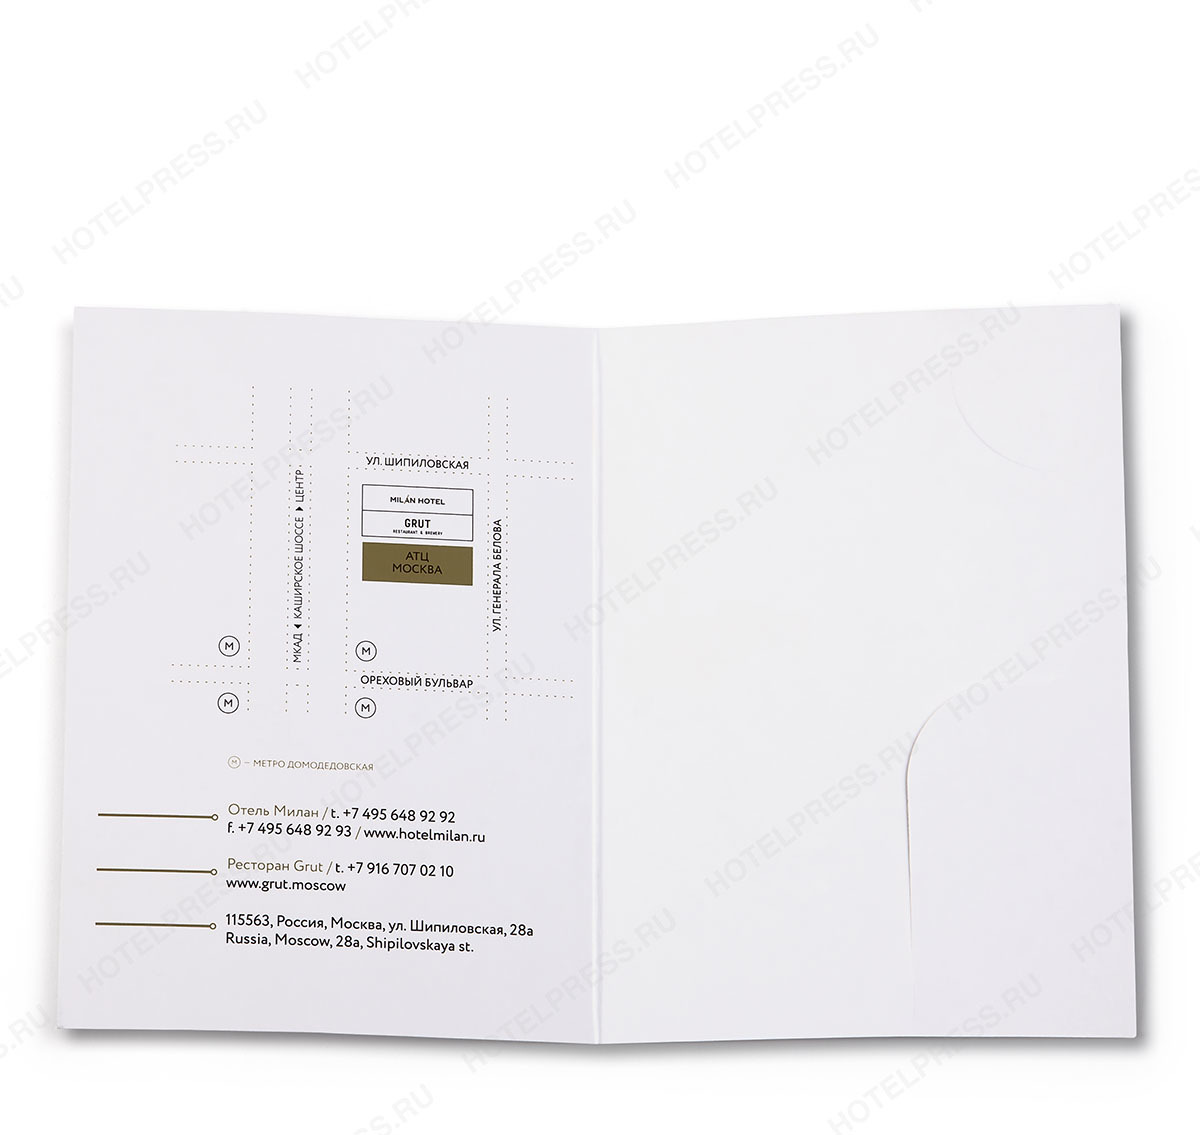 Кейхолдер-конверт для ключ-карт отеля из мелованной бумаги